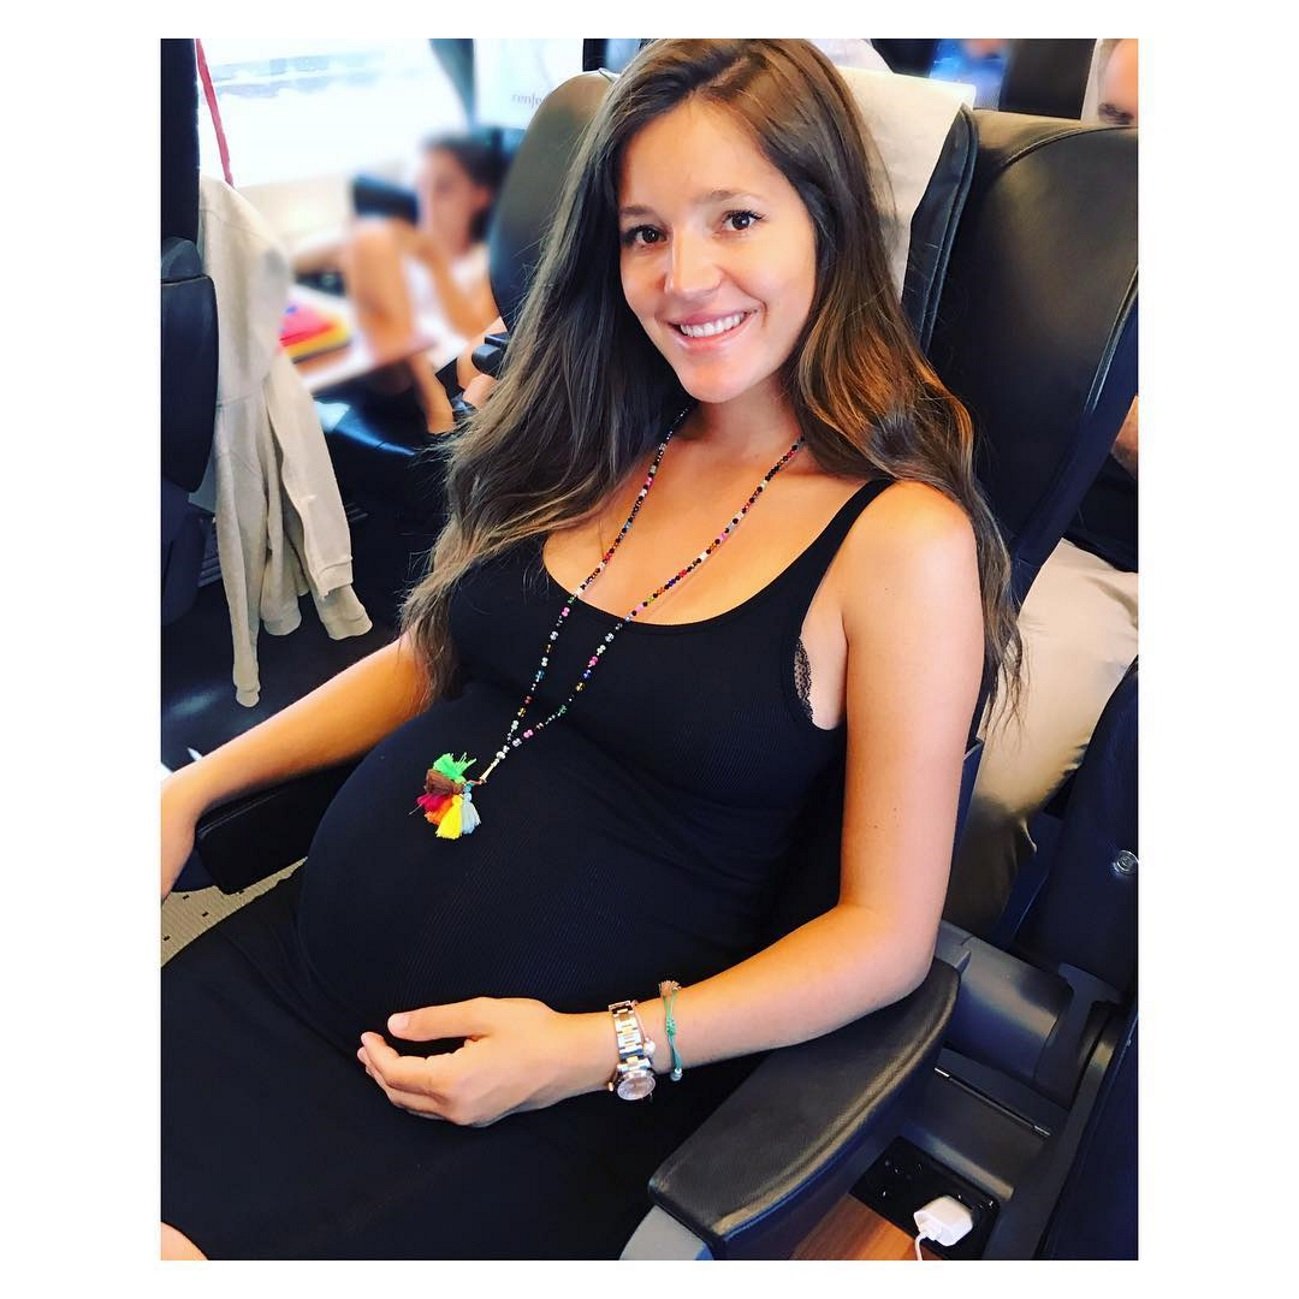 Malena Costa presenta el seu nadó per Instagram